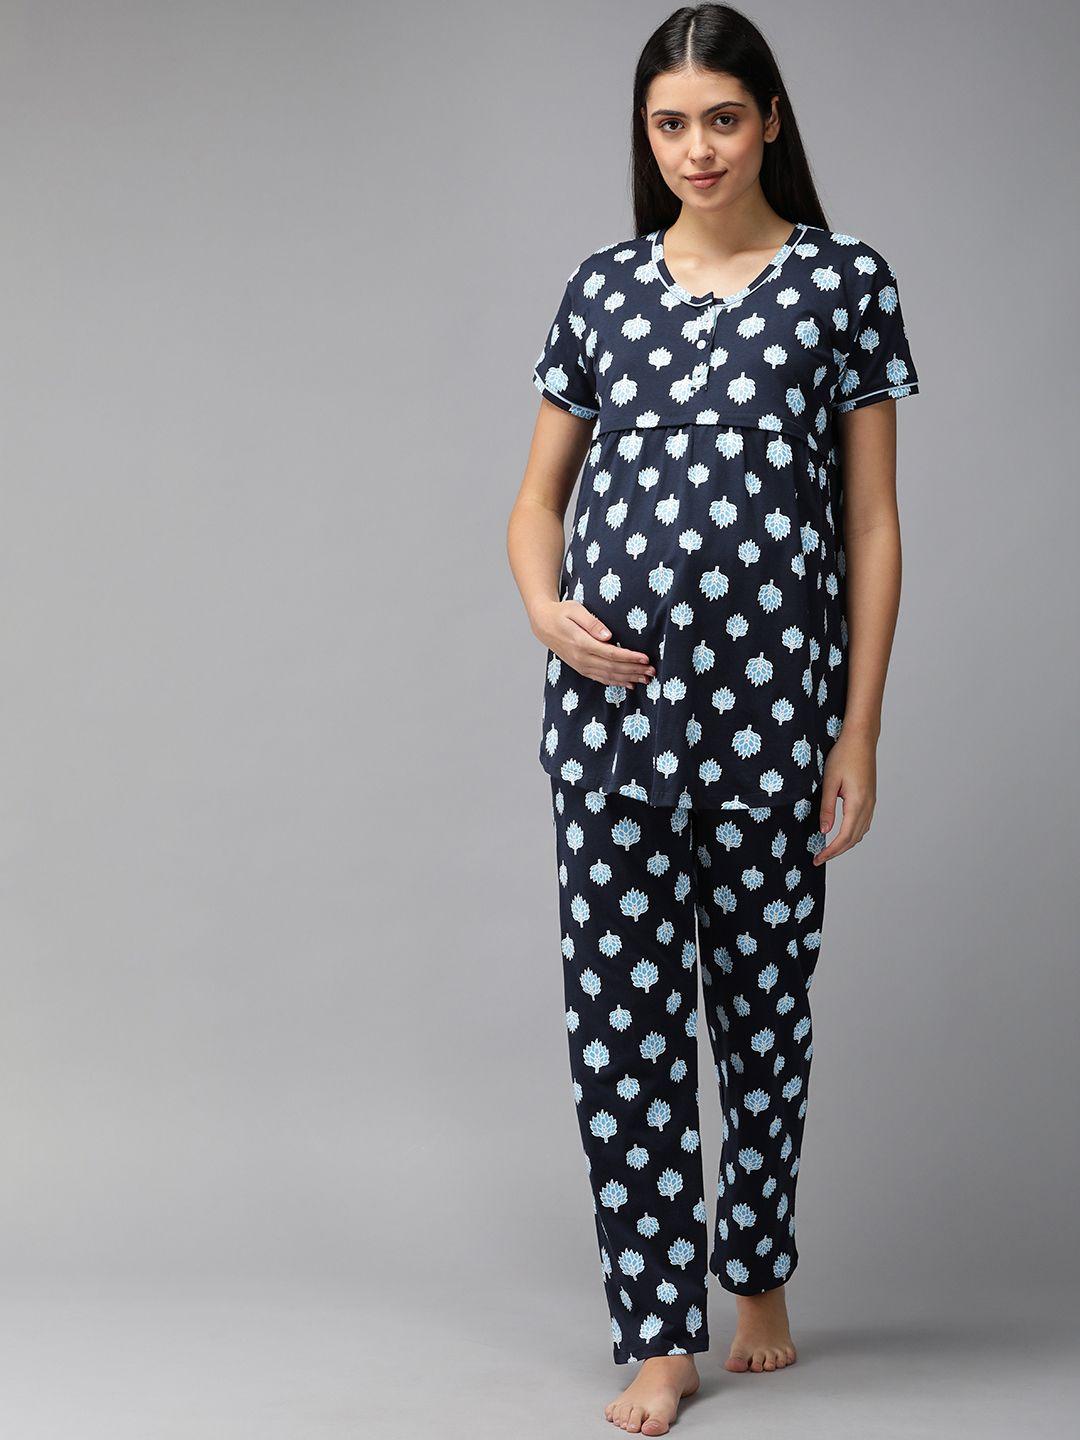 zeyo women blue & white floral print cotton maternity pyjama set